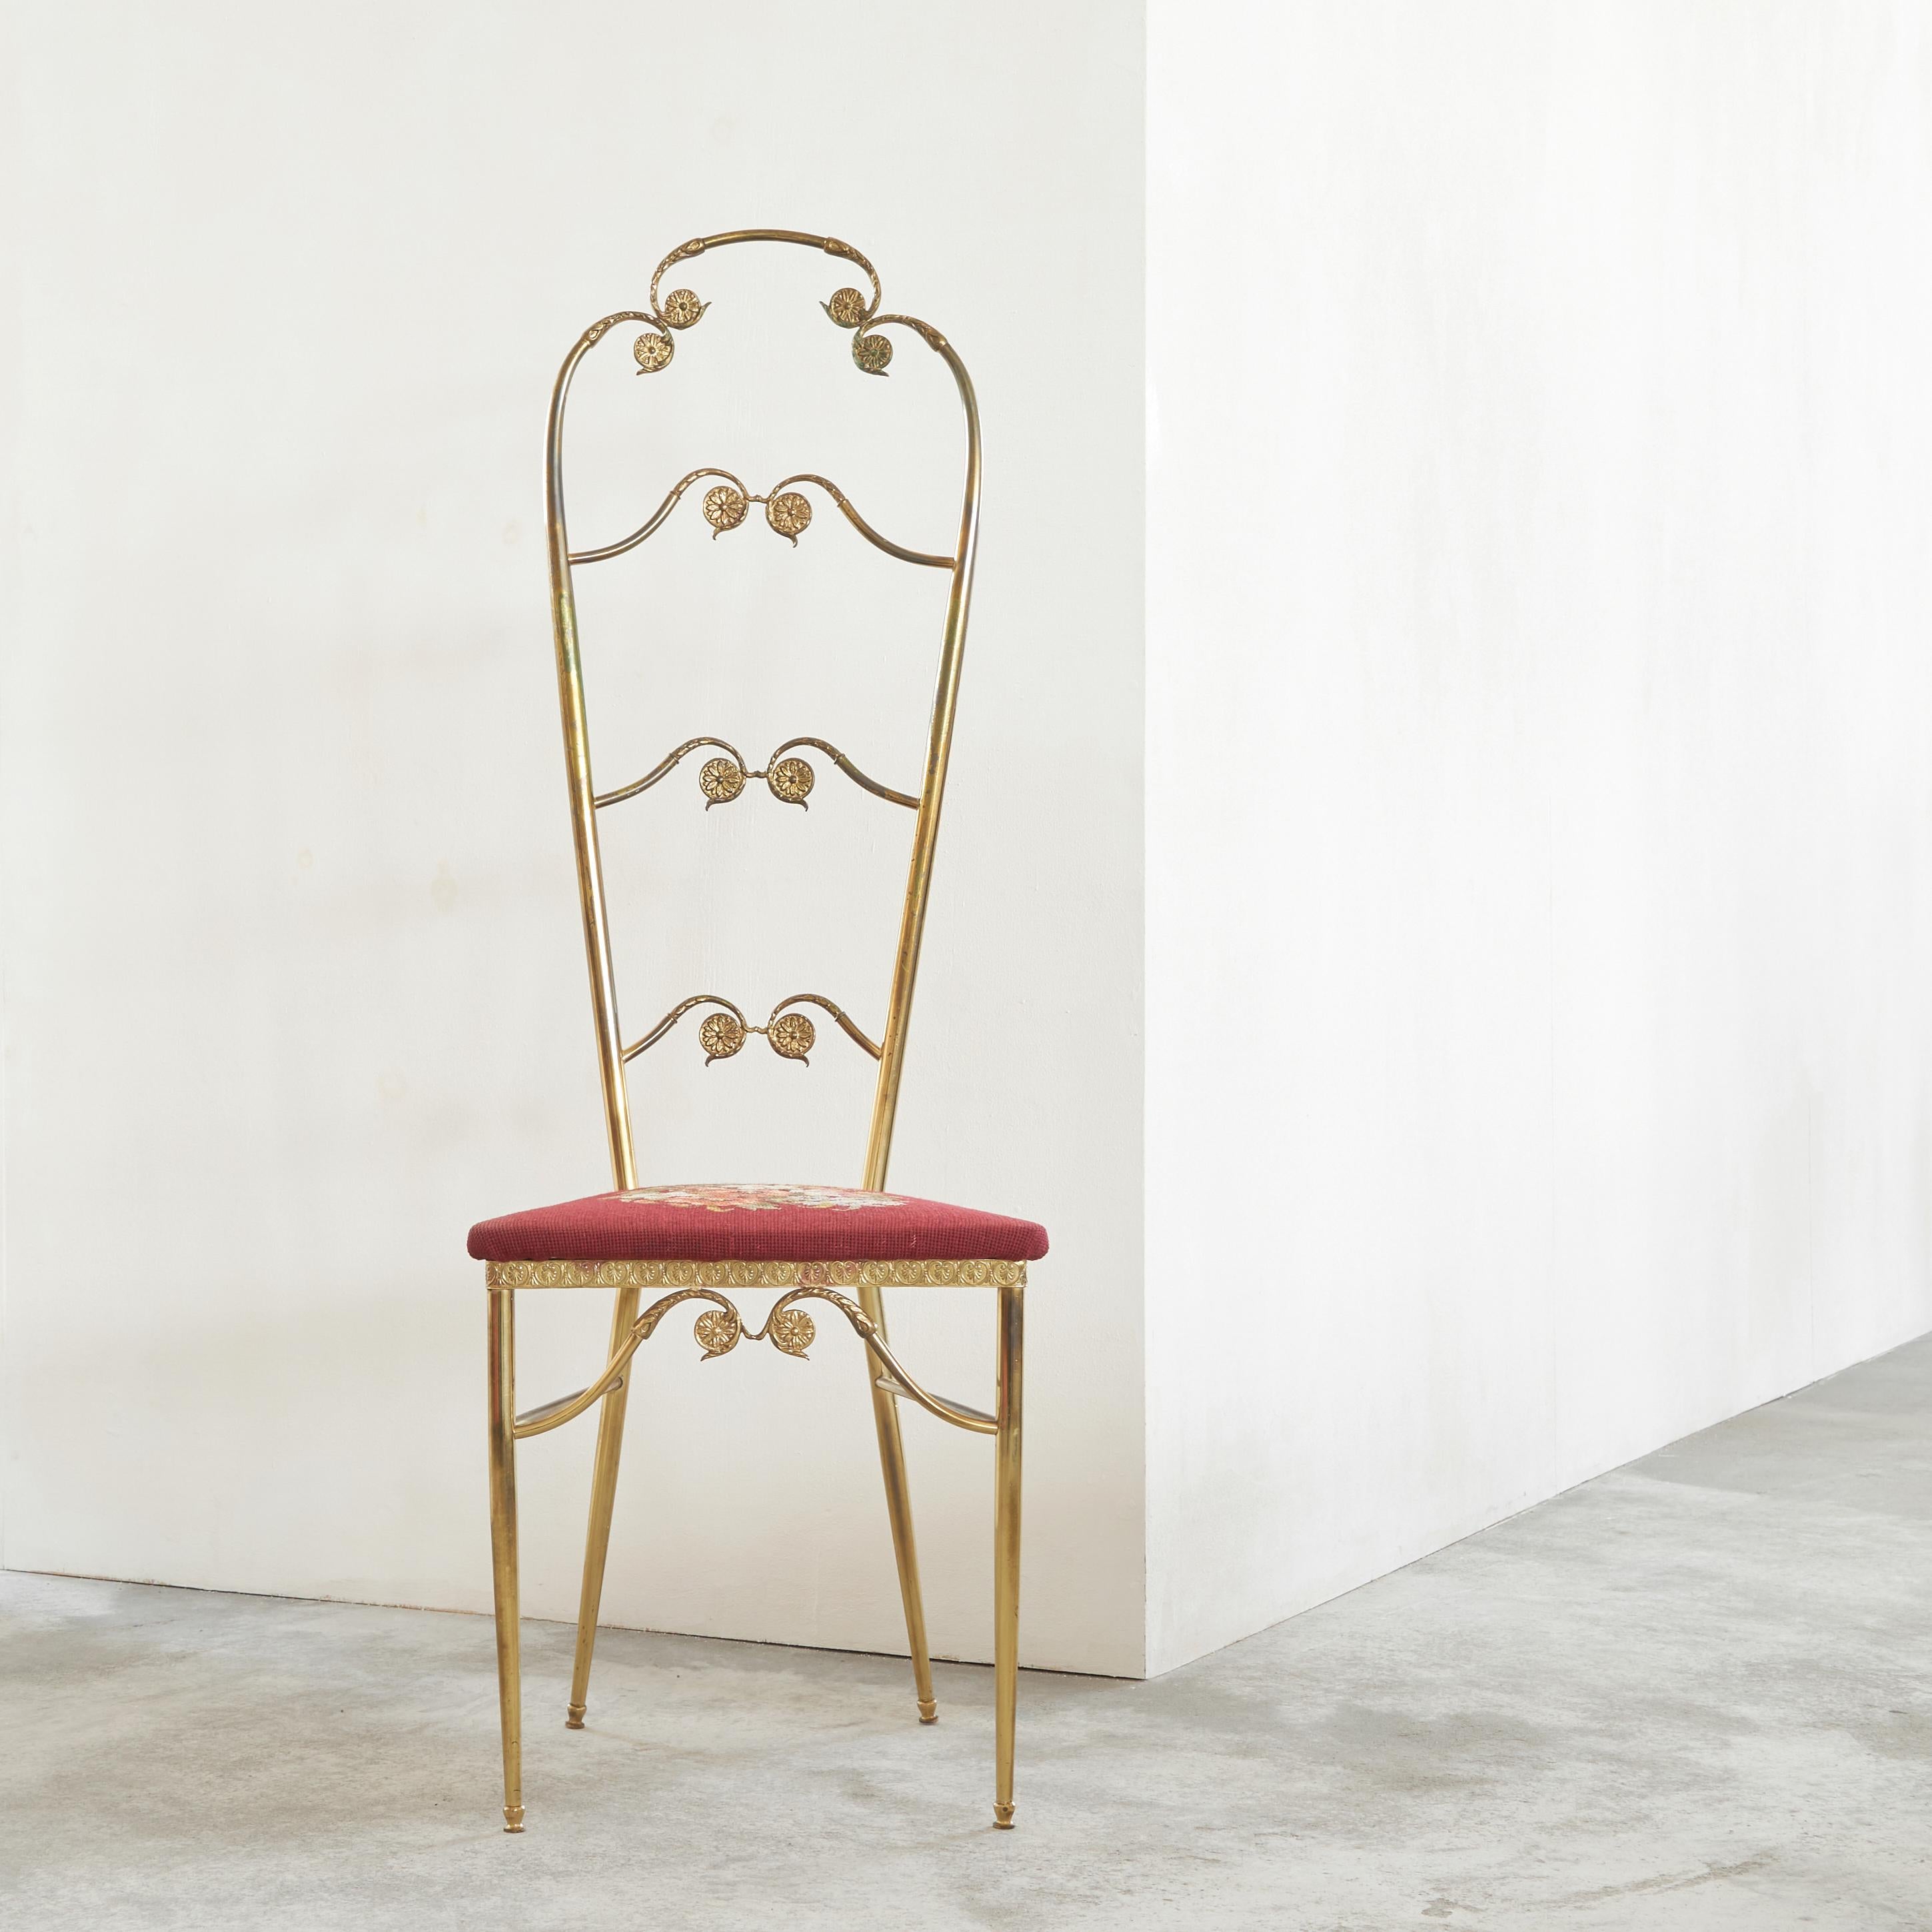 Chiavari-Stuhl mit hoher Rückenlehne, Messing und Stickerei, Europa, 1960er Jahre.

Sie suchen nach etwas Außergewöhnlichem für Ihre Einrichtung? Dieser wunderbare Chiavari-Stuhl aus Messing und Stickerei könnte perfekt dazu passen. Skurril und